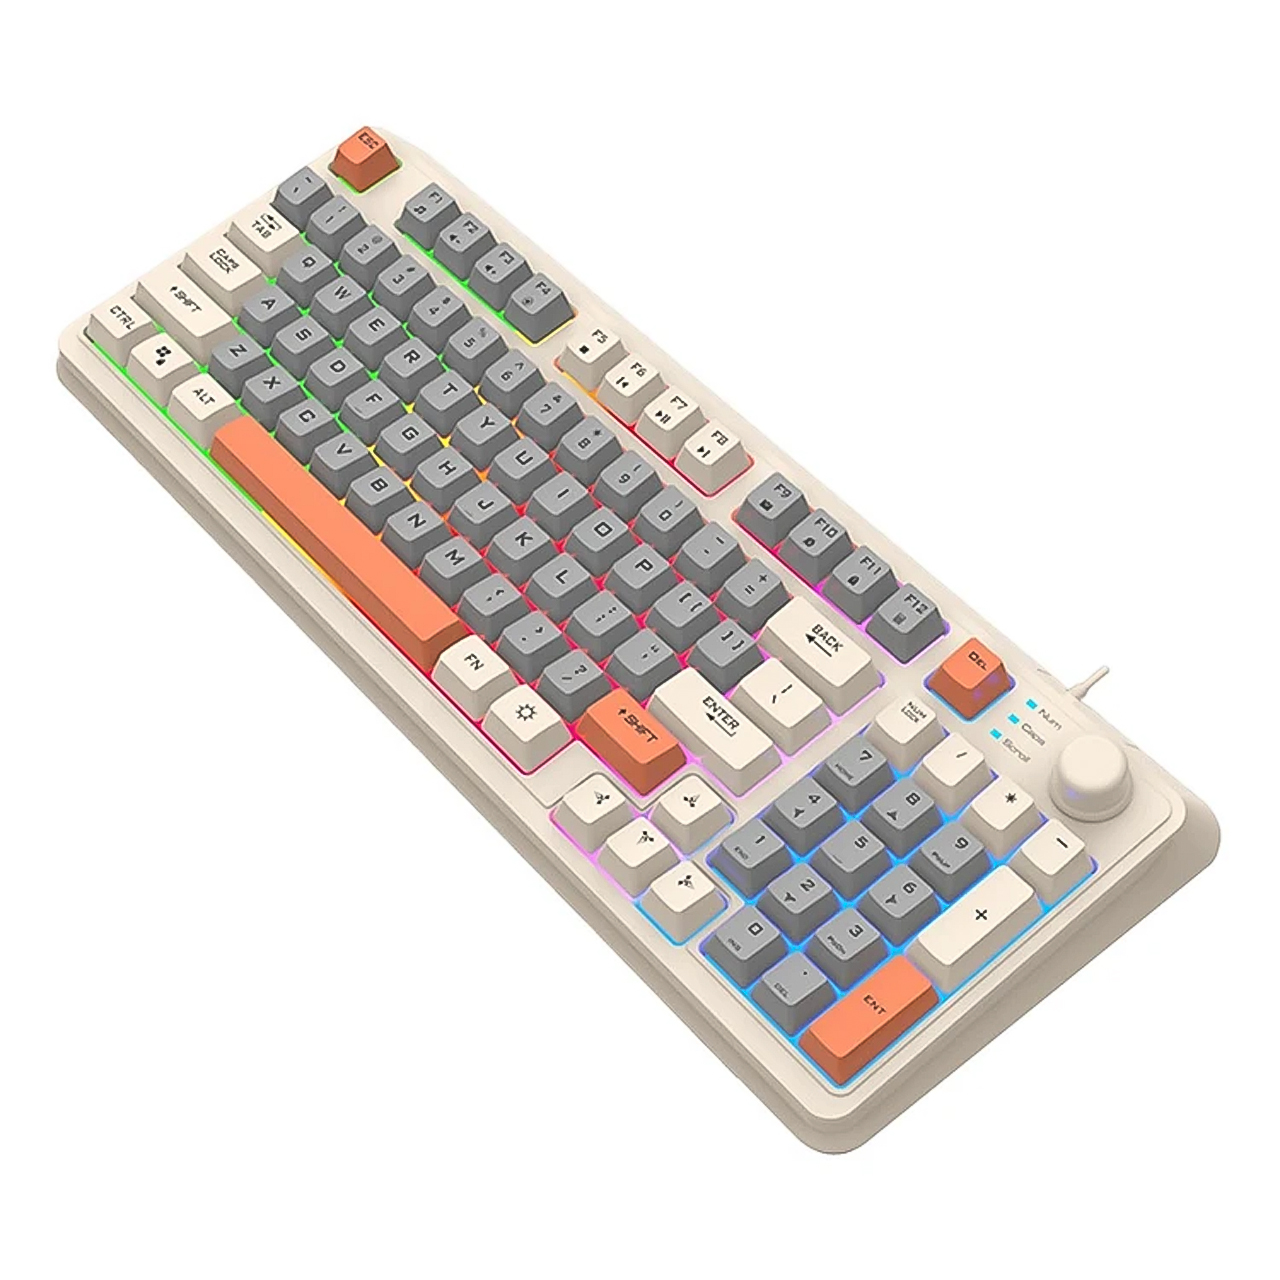 Bàn phím máy tính giả cơ chuyên game Vinetteam XUNFOX K82 bàn phím chơi game thiết kế 94 phím có led 7 màu cực đẹp kèm theo nút chỉnh âm lượng dùng cho chơi game, văn phòng - hàng chính hãng